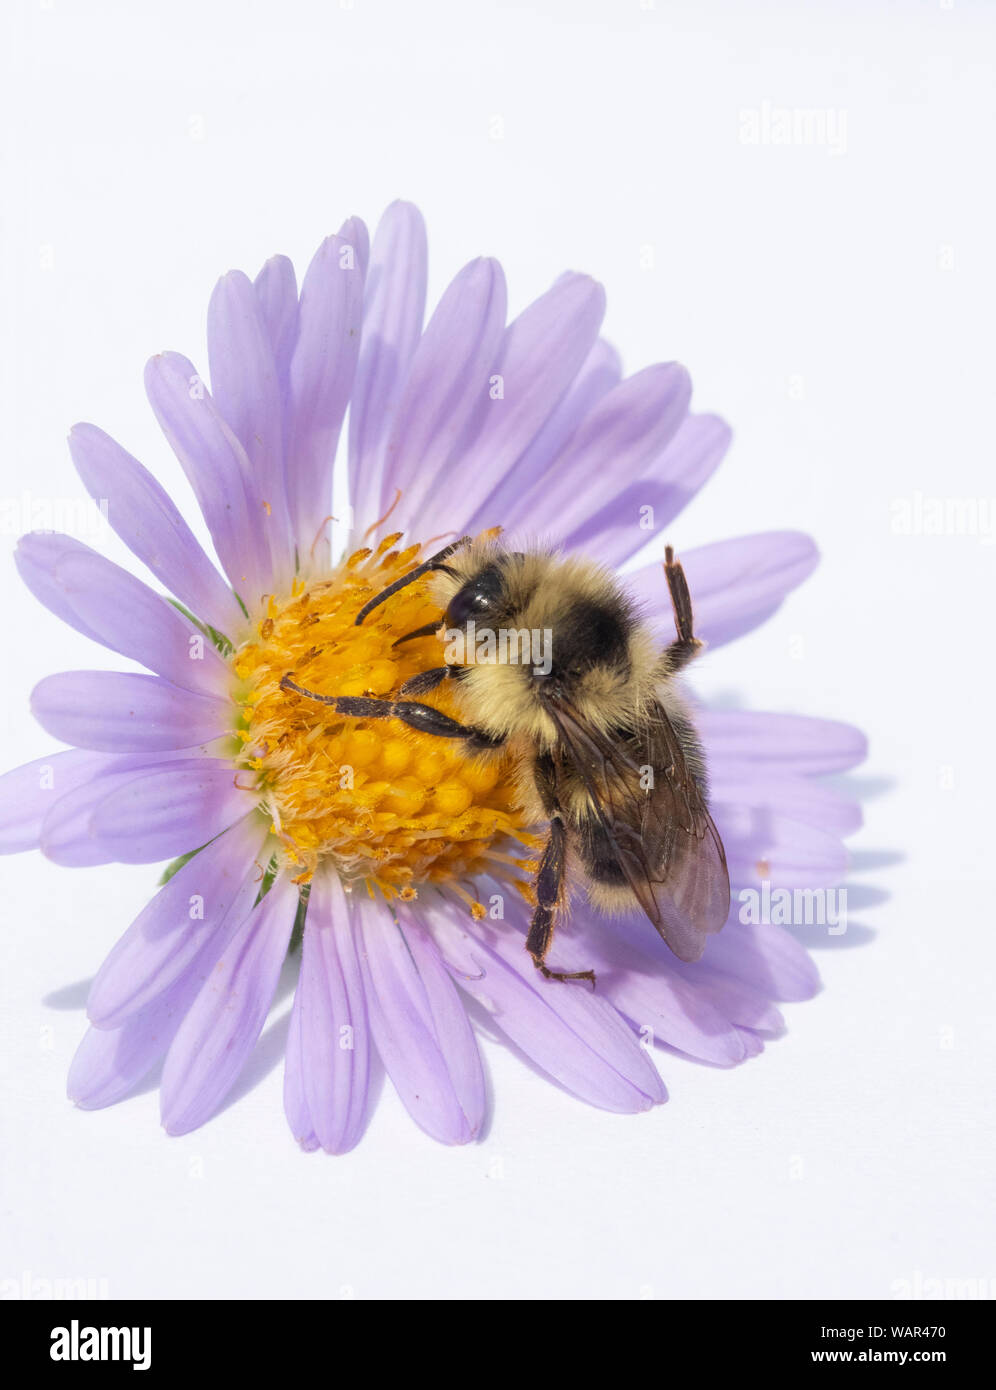 Bumble Bee rovistando sul fiore Aster Foto Stock